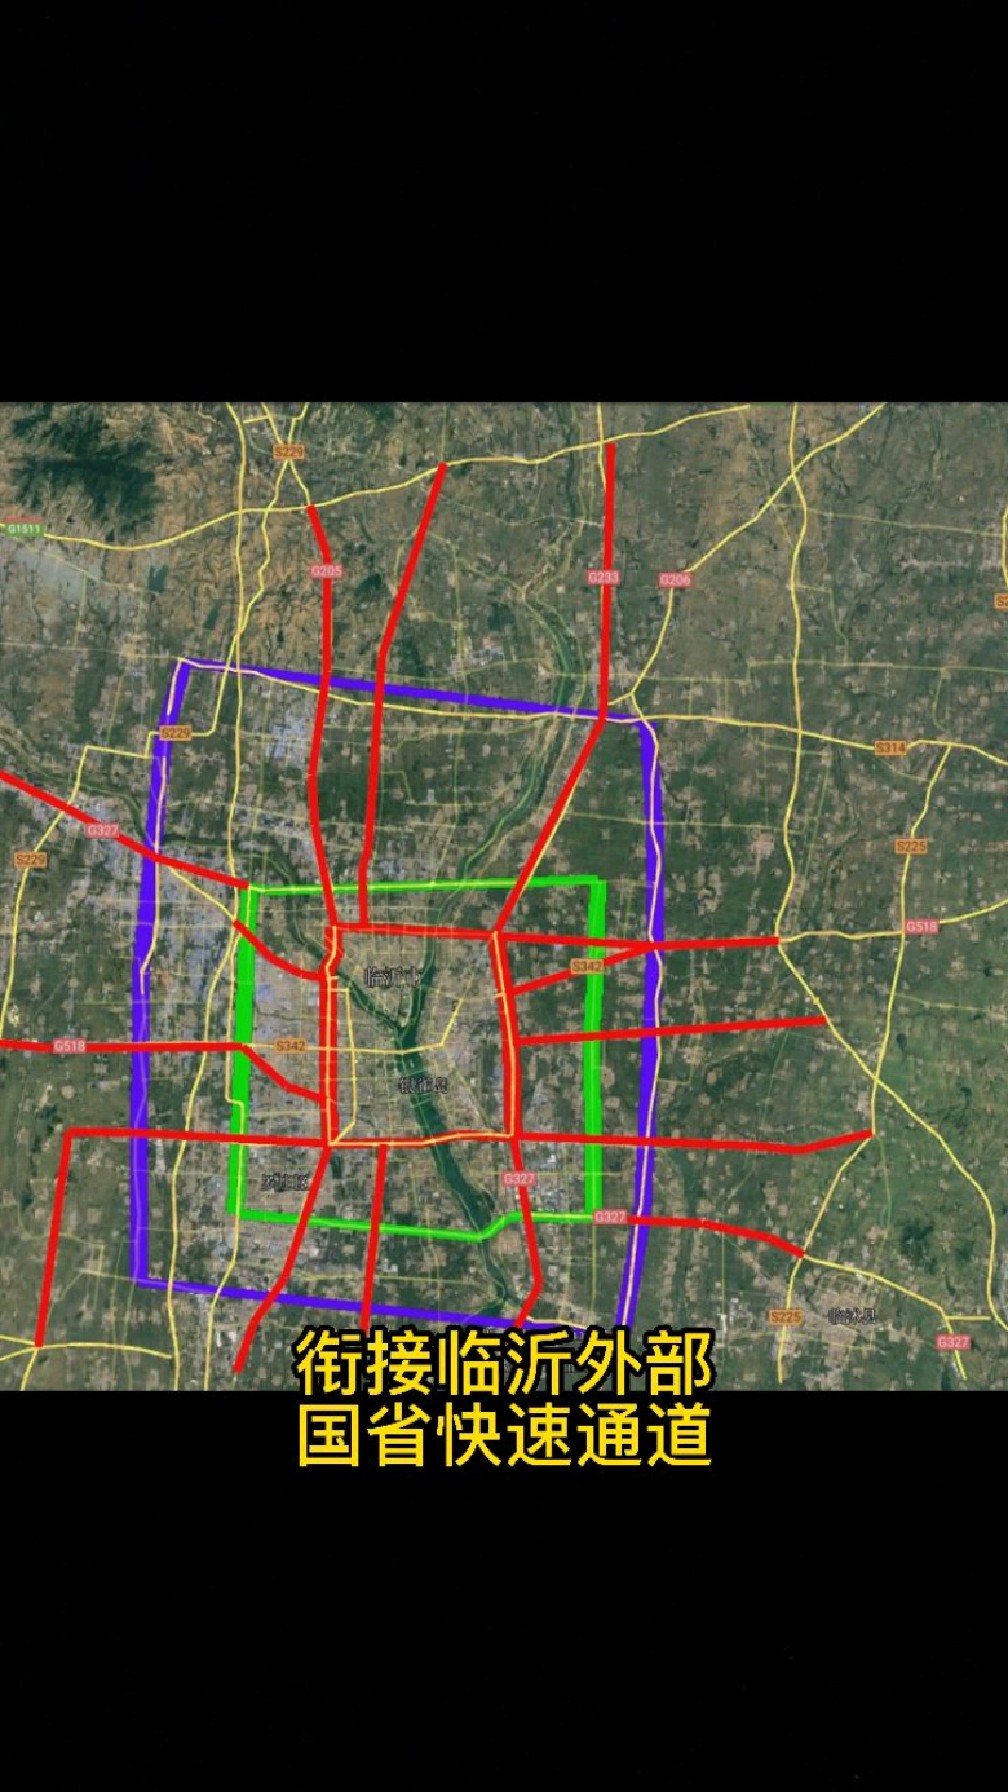 临沂三环十五射远期规划15条道路让临沂远行交通更便捷高效